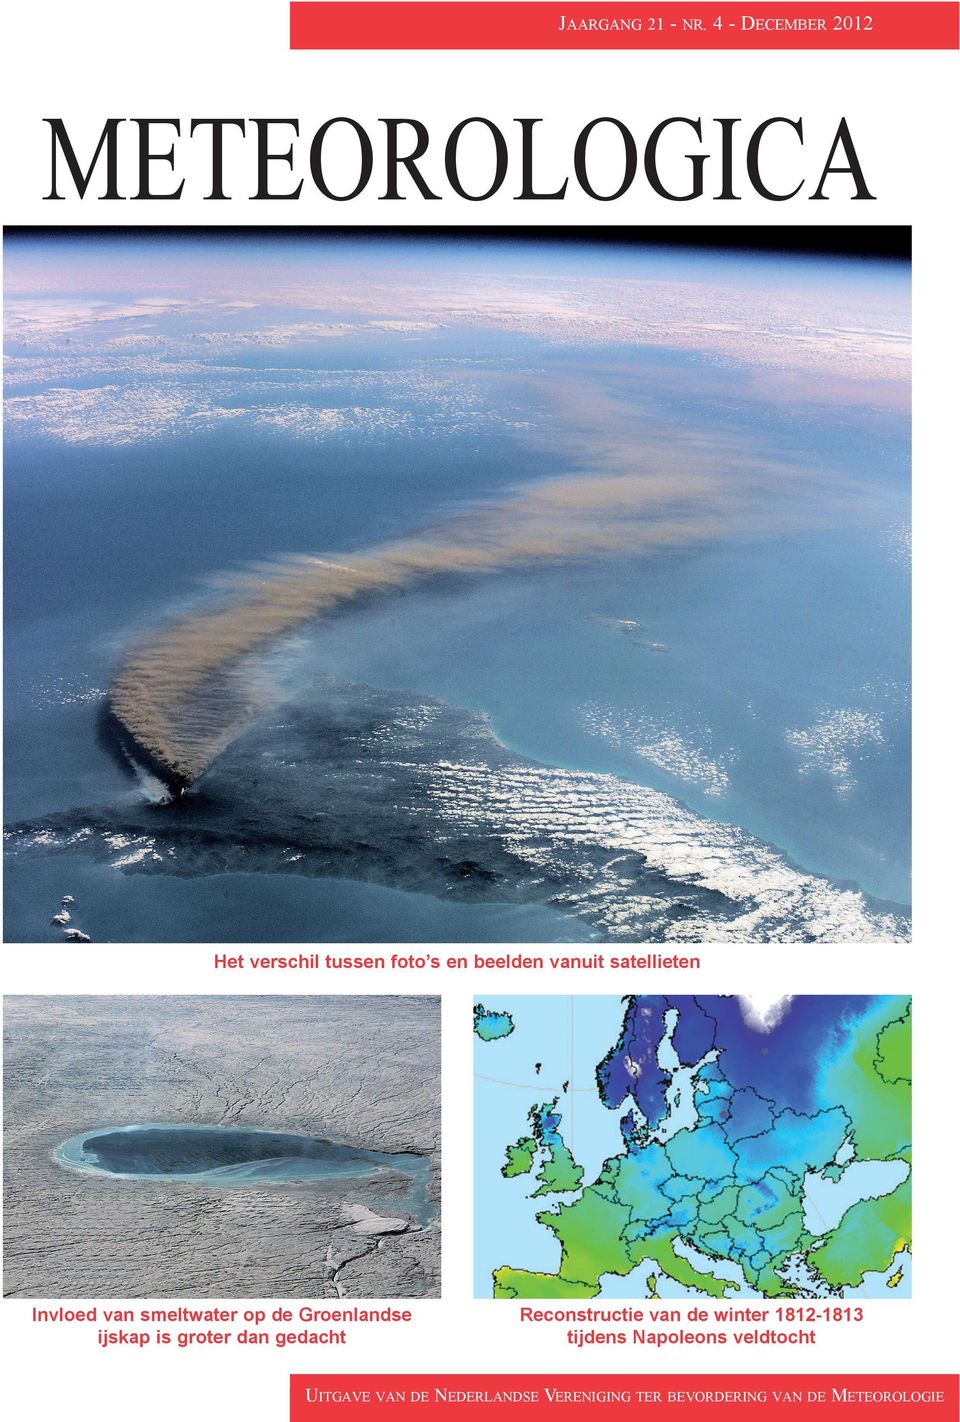 satellieten Invloed van smeltwater op de Groenlandse ijskap is groter dan